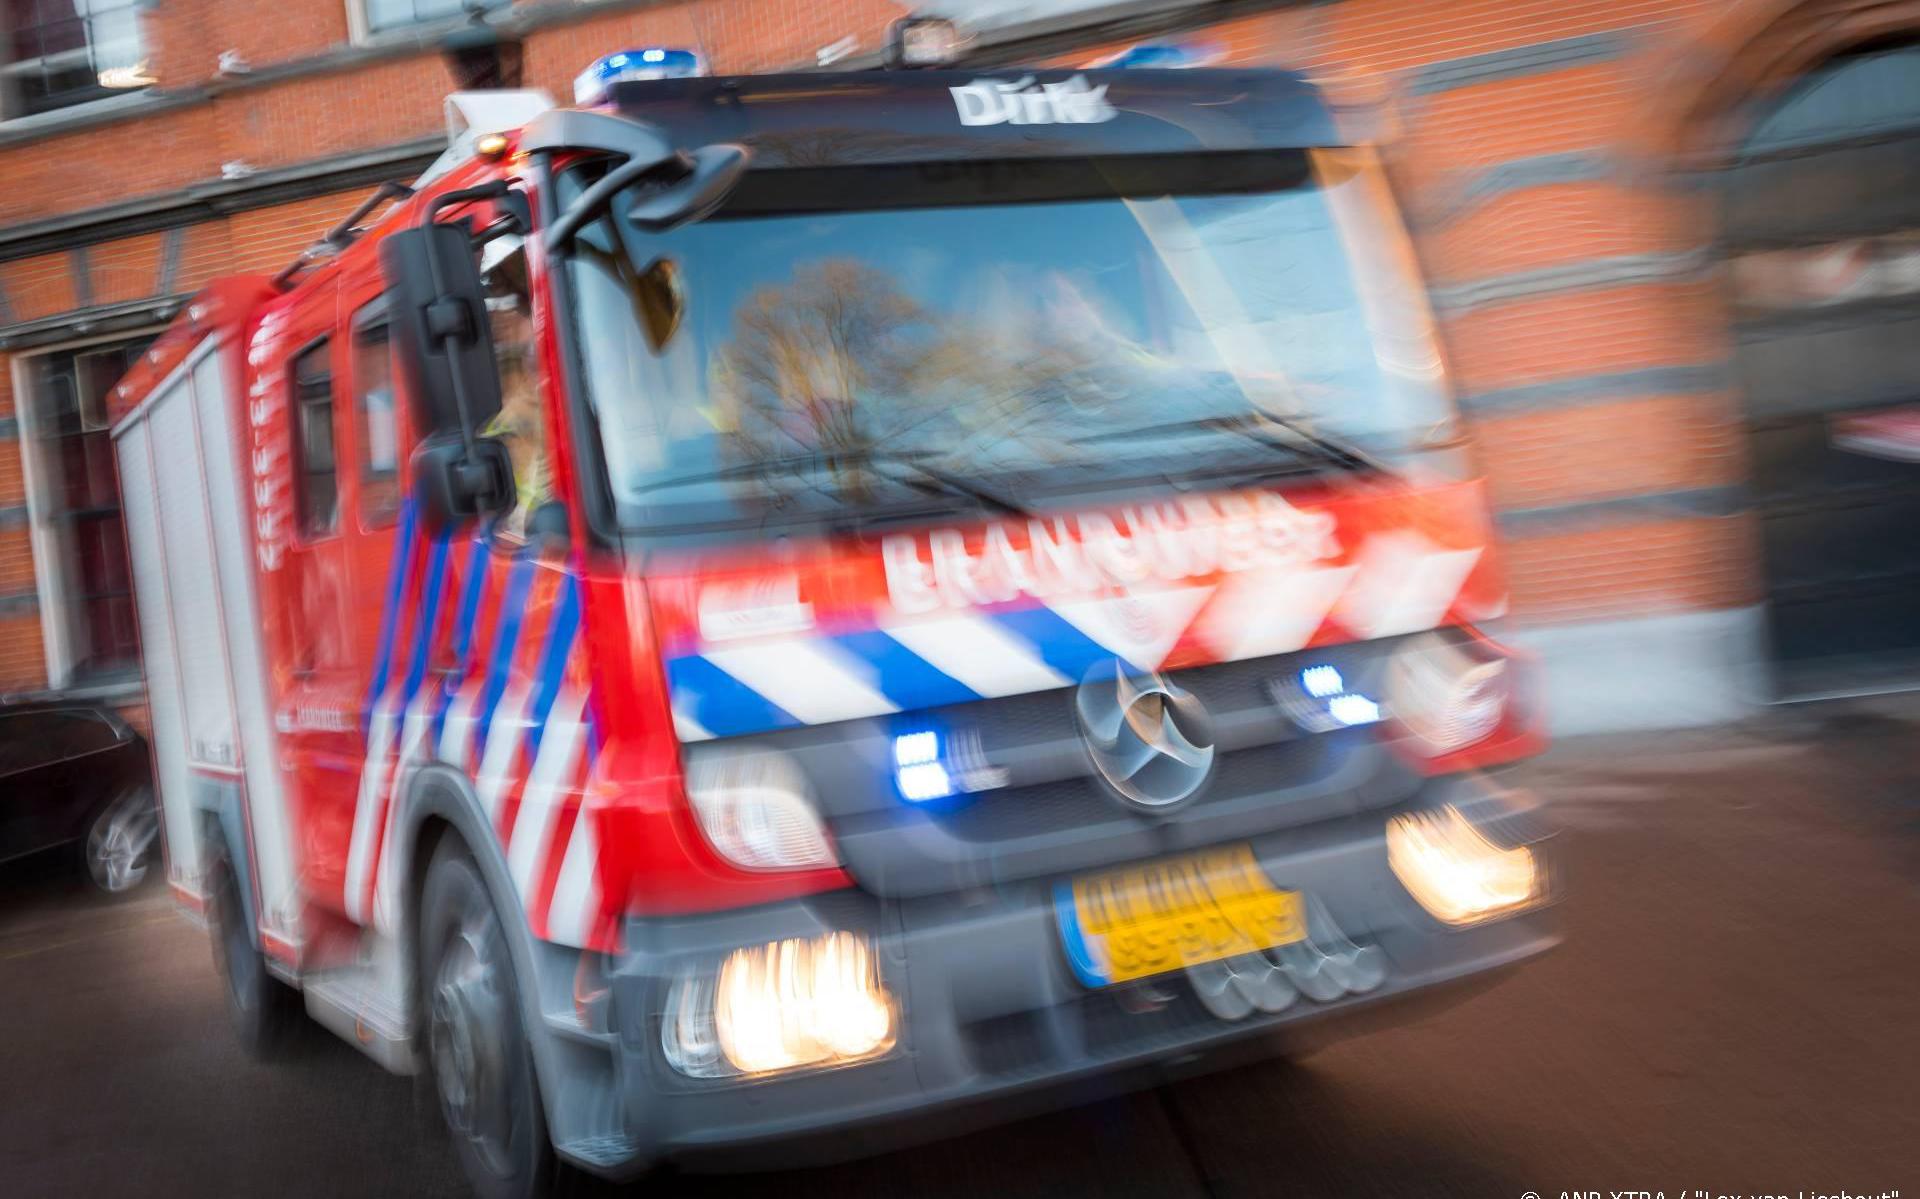 Dode gevonden bij blussen woningbrand in Zwolle